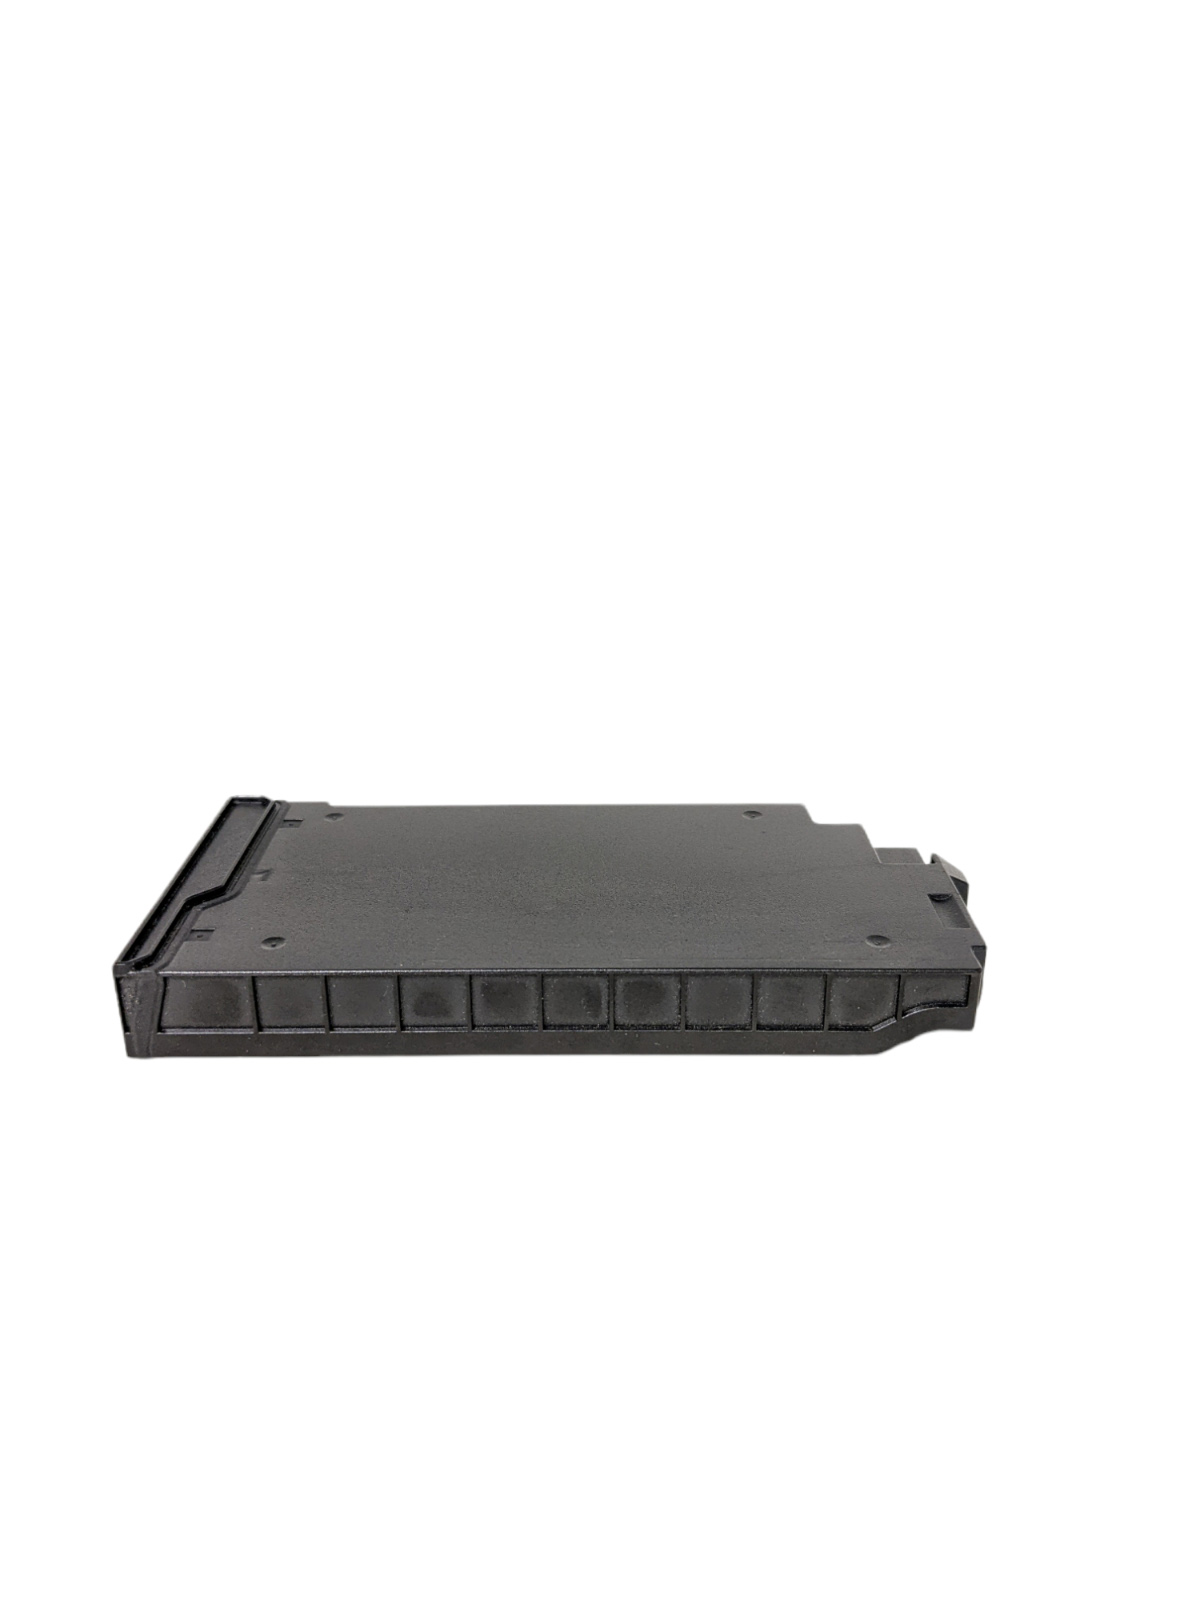 Battery Getac S410 4200mAh 46.6Wh